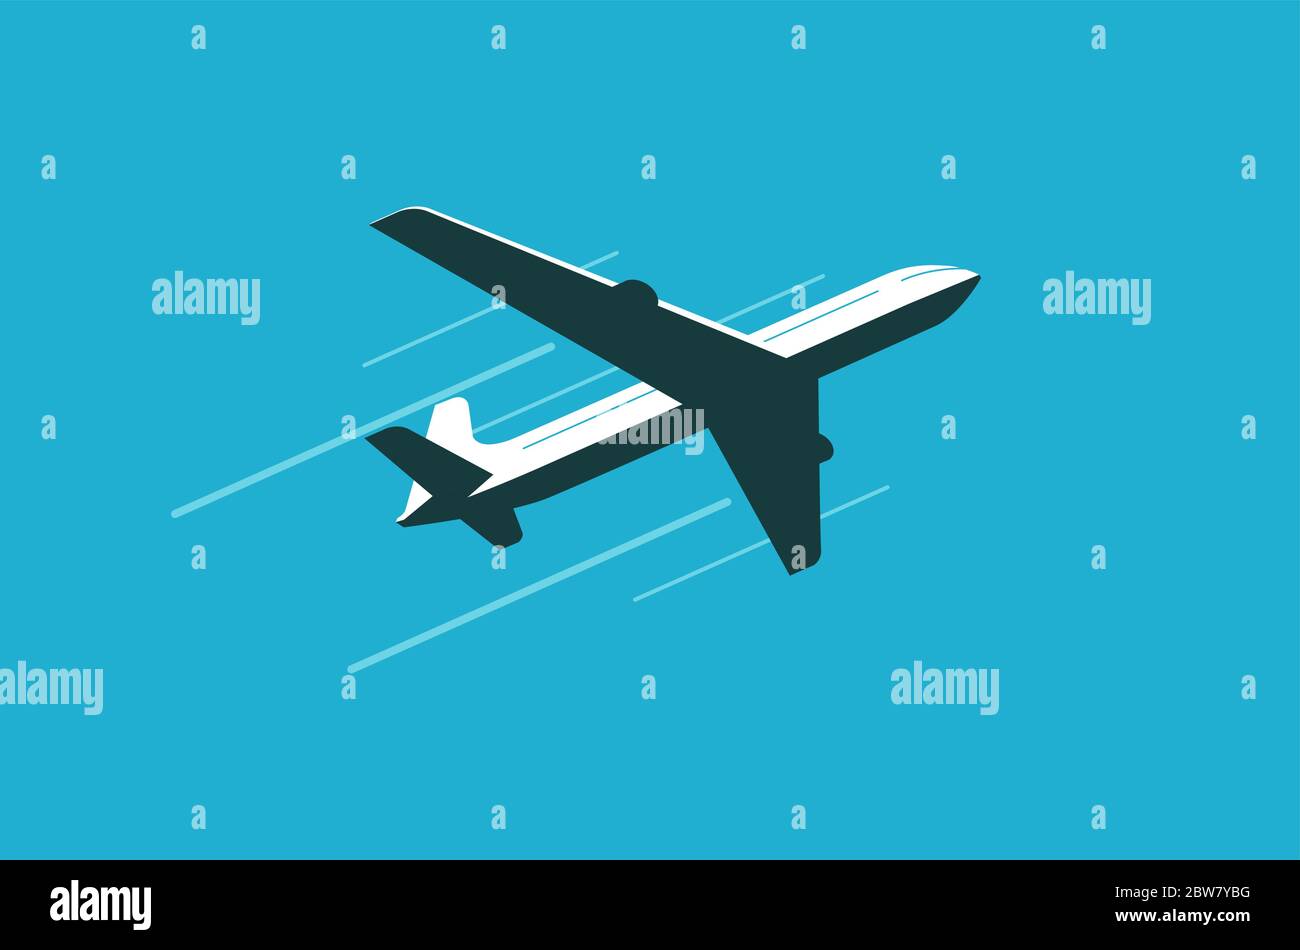 Fliegendes Flugzeug am Himmel. Kommerzielle Fluggesellschaft, Flugzeug Vektor Illustration Stock Vektor